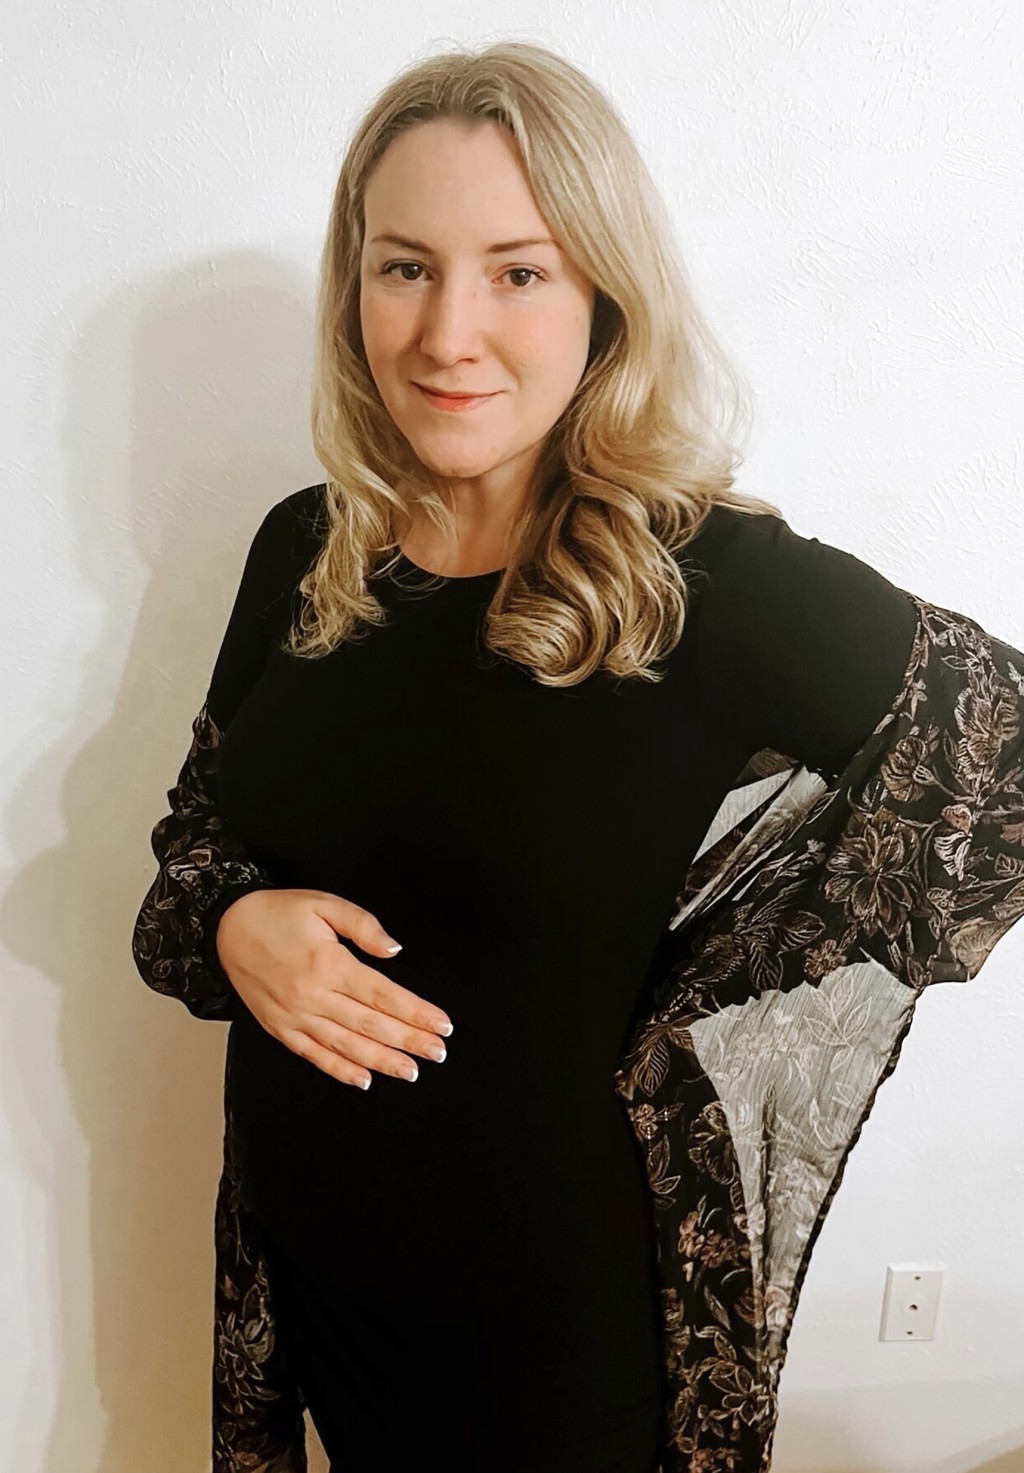 懷孕20周的考克斯（Kate Cox）證實胎兒有缺憾難以存活，卻要為了墮胎走法律程序。 美聯社